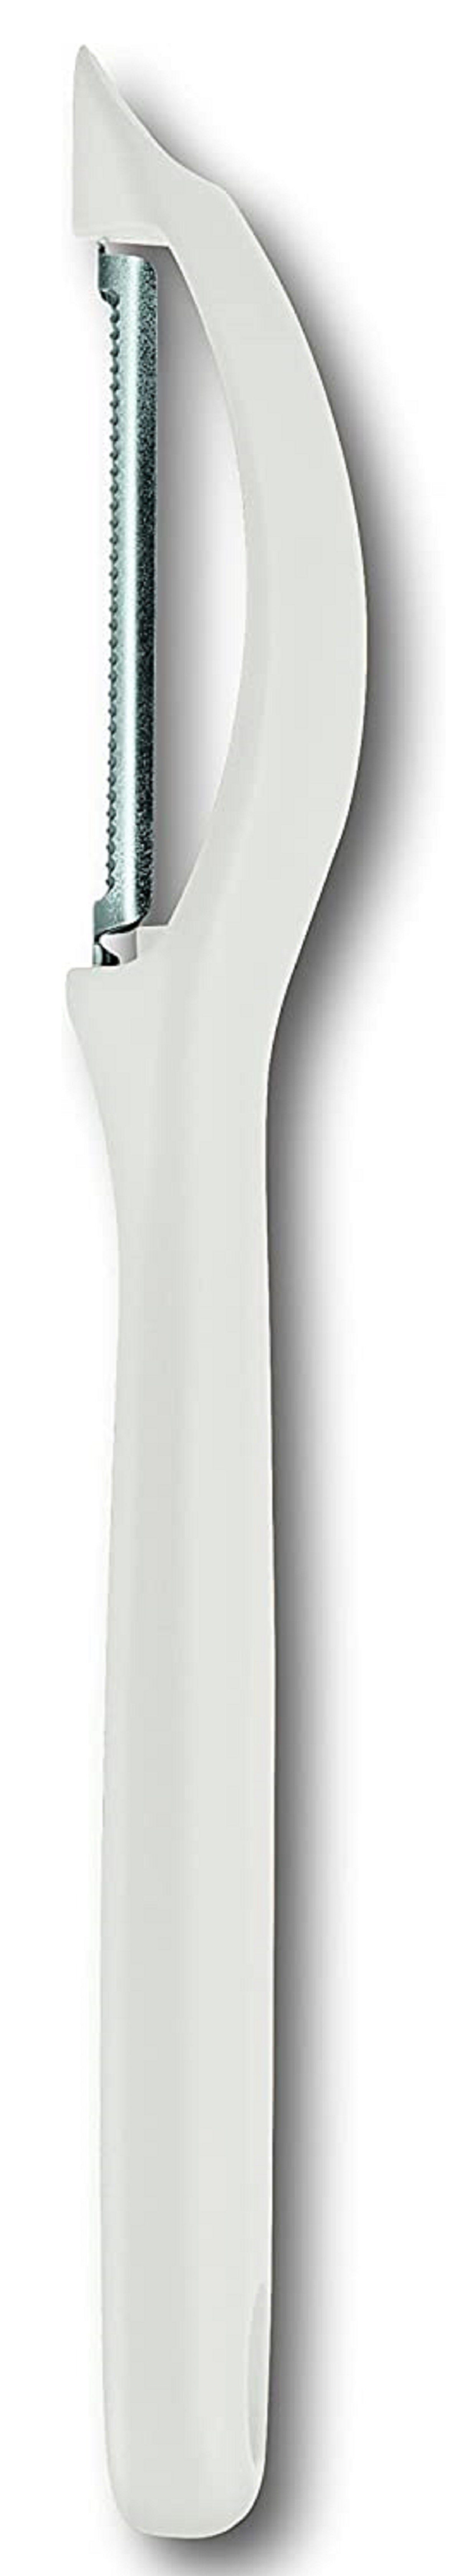 Victorinox Sparschäler Limited Edition Swiss Classic Universalschäler, Weiß